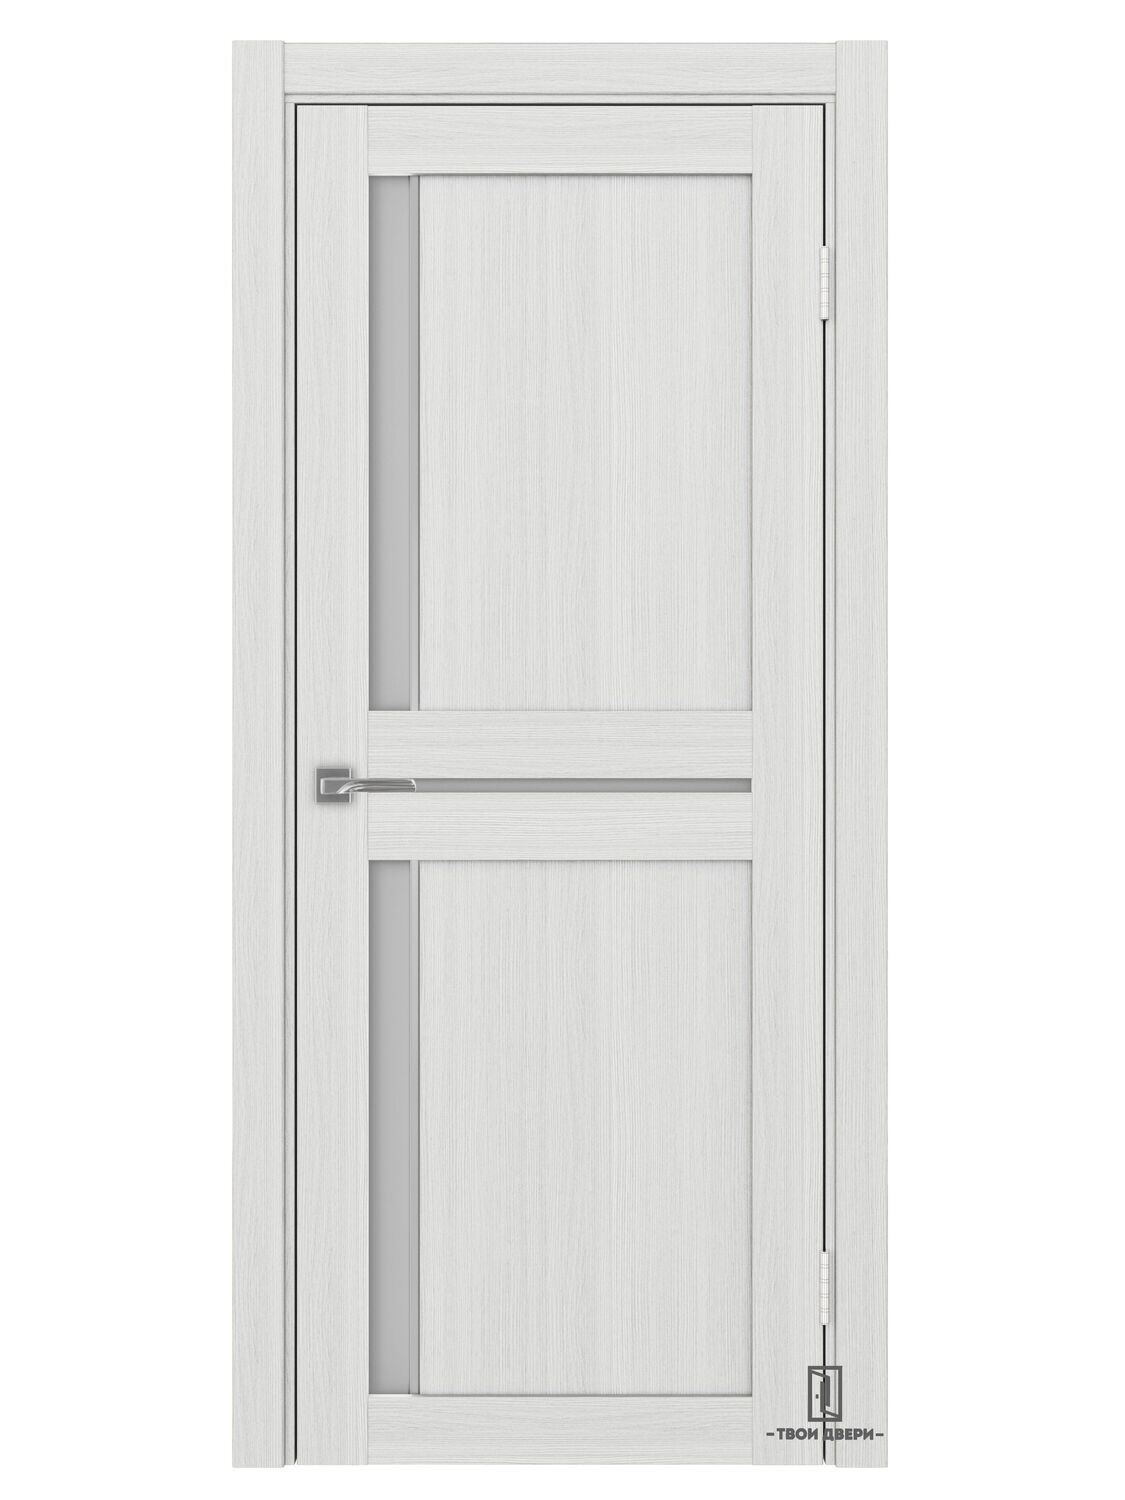 Дверь межкомнатная АПС 523.221 (молдинги), ясень серебристый